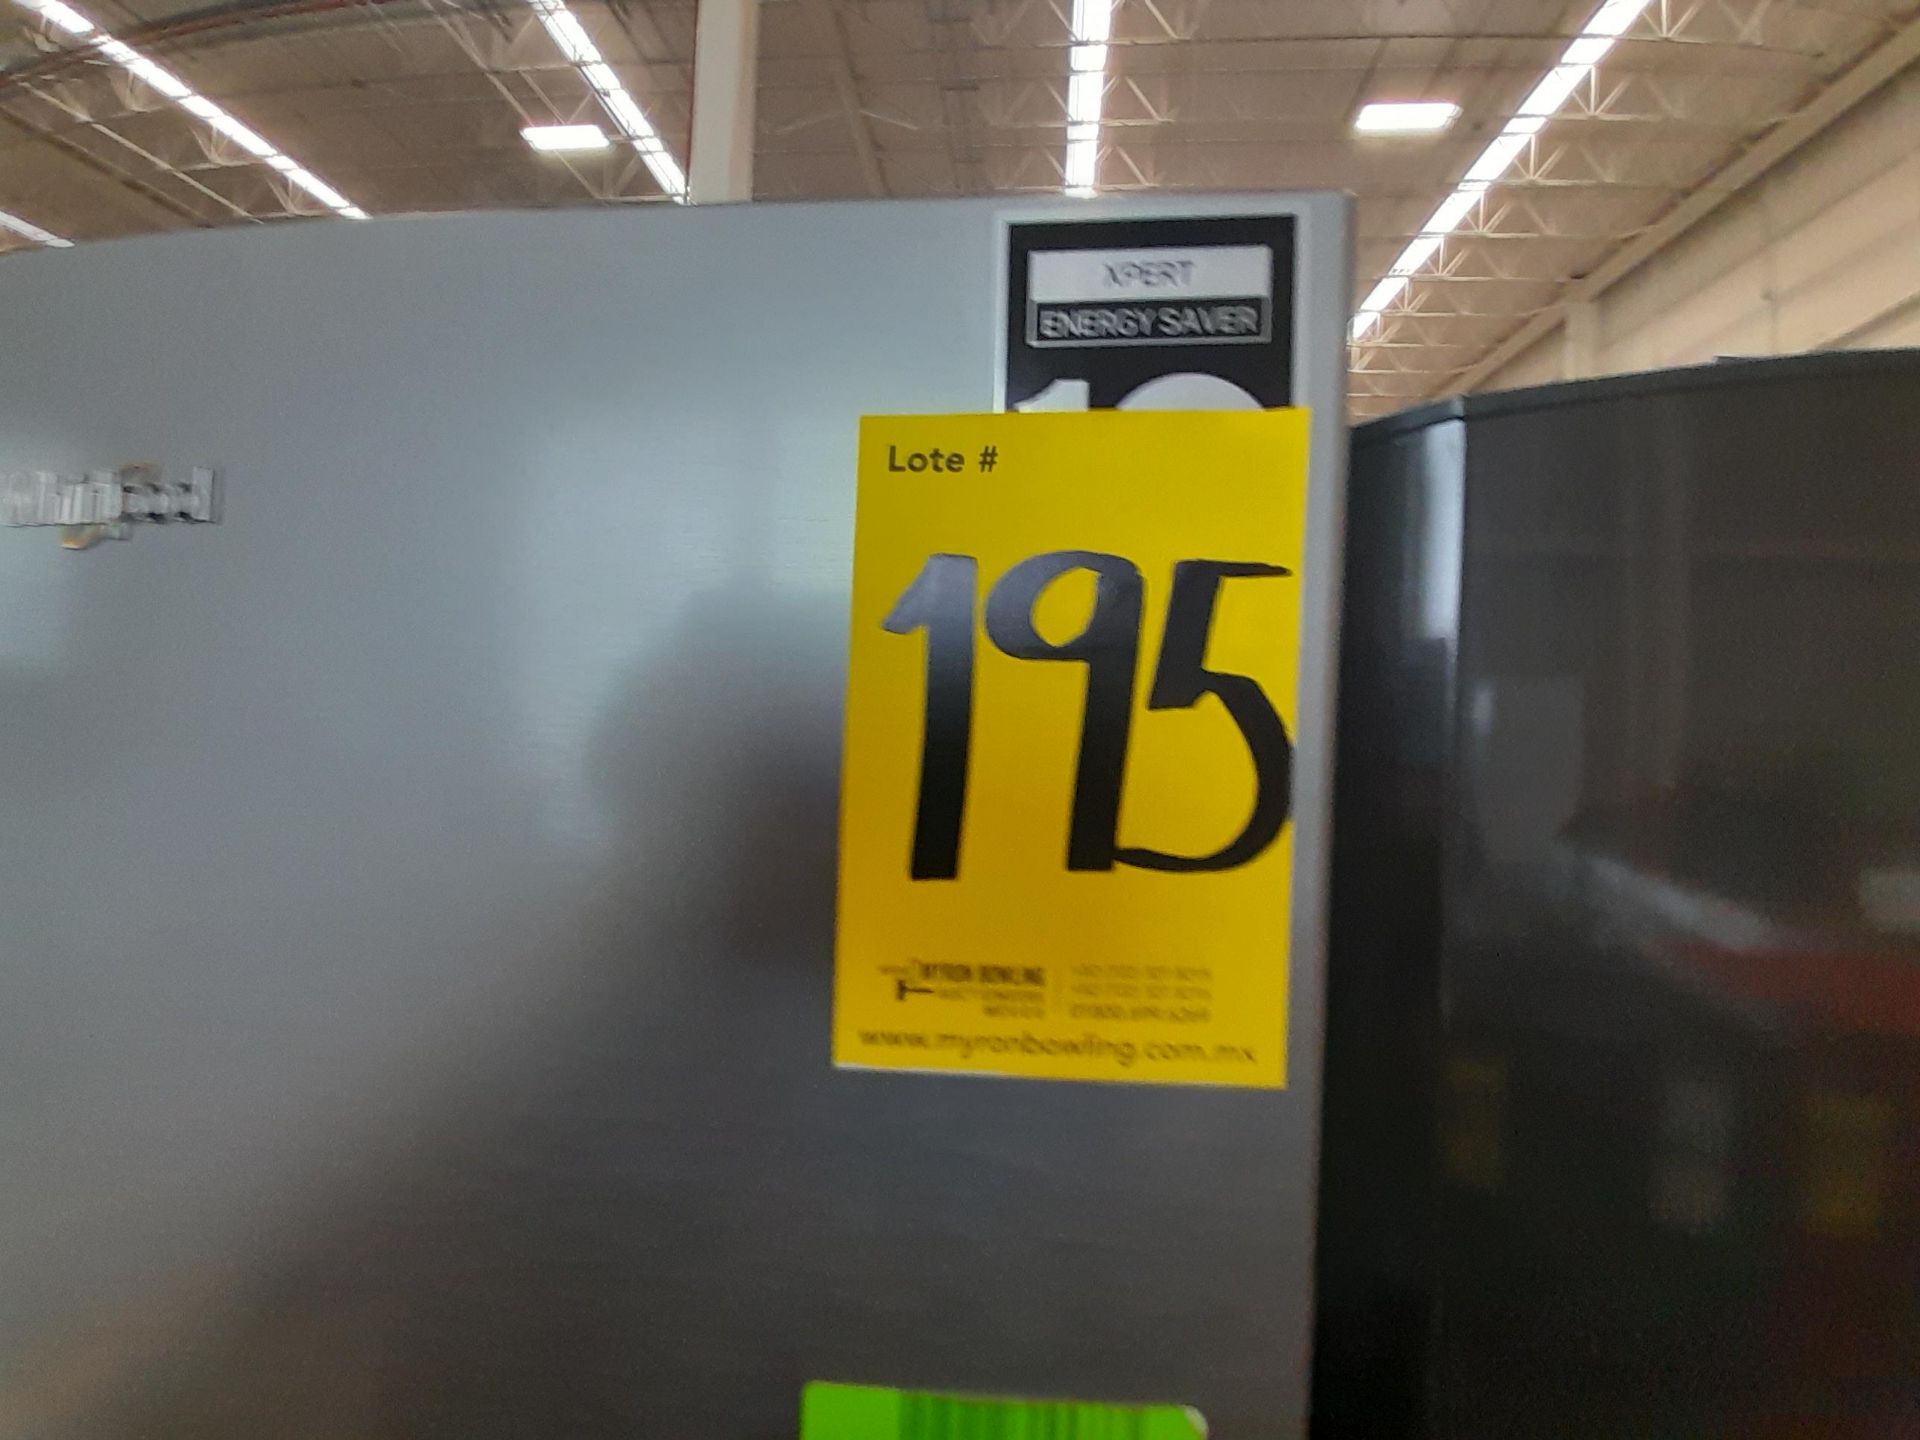 Lote de 1 Refrigerador Marca WHIRPOOL, Modelo WT1130M, Color GRIS (No se asegura su funcionamie - Image 6 of 6